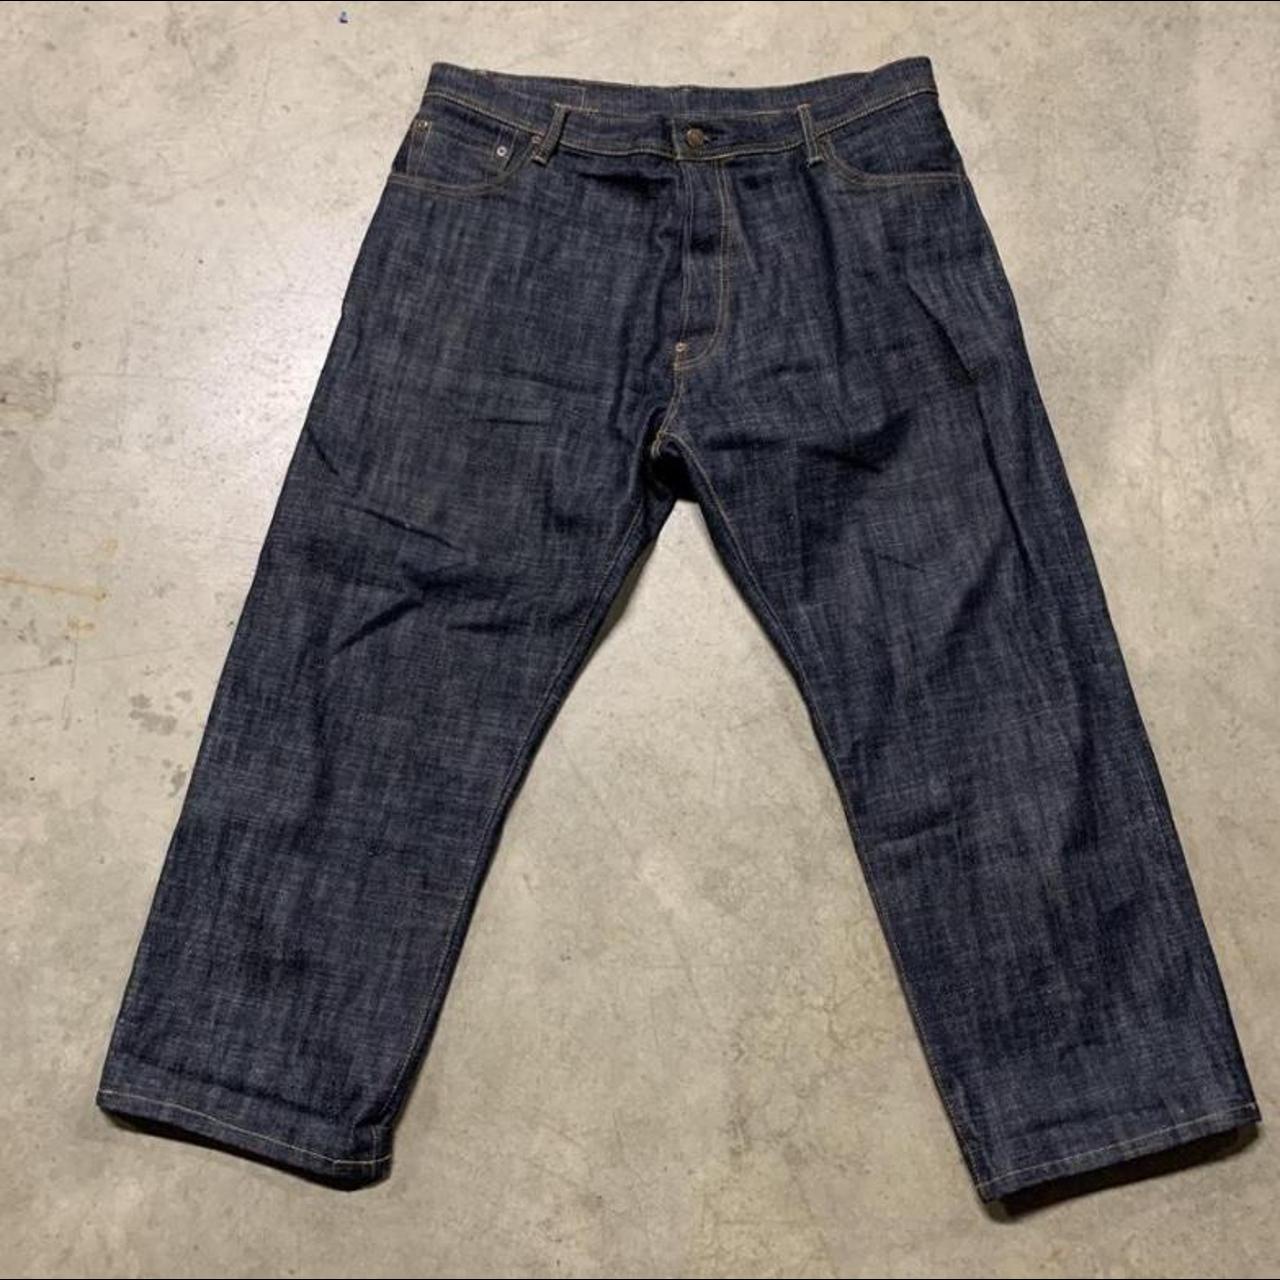 Evisu Men's Navy Jeans | Depop